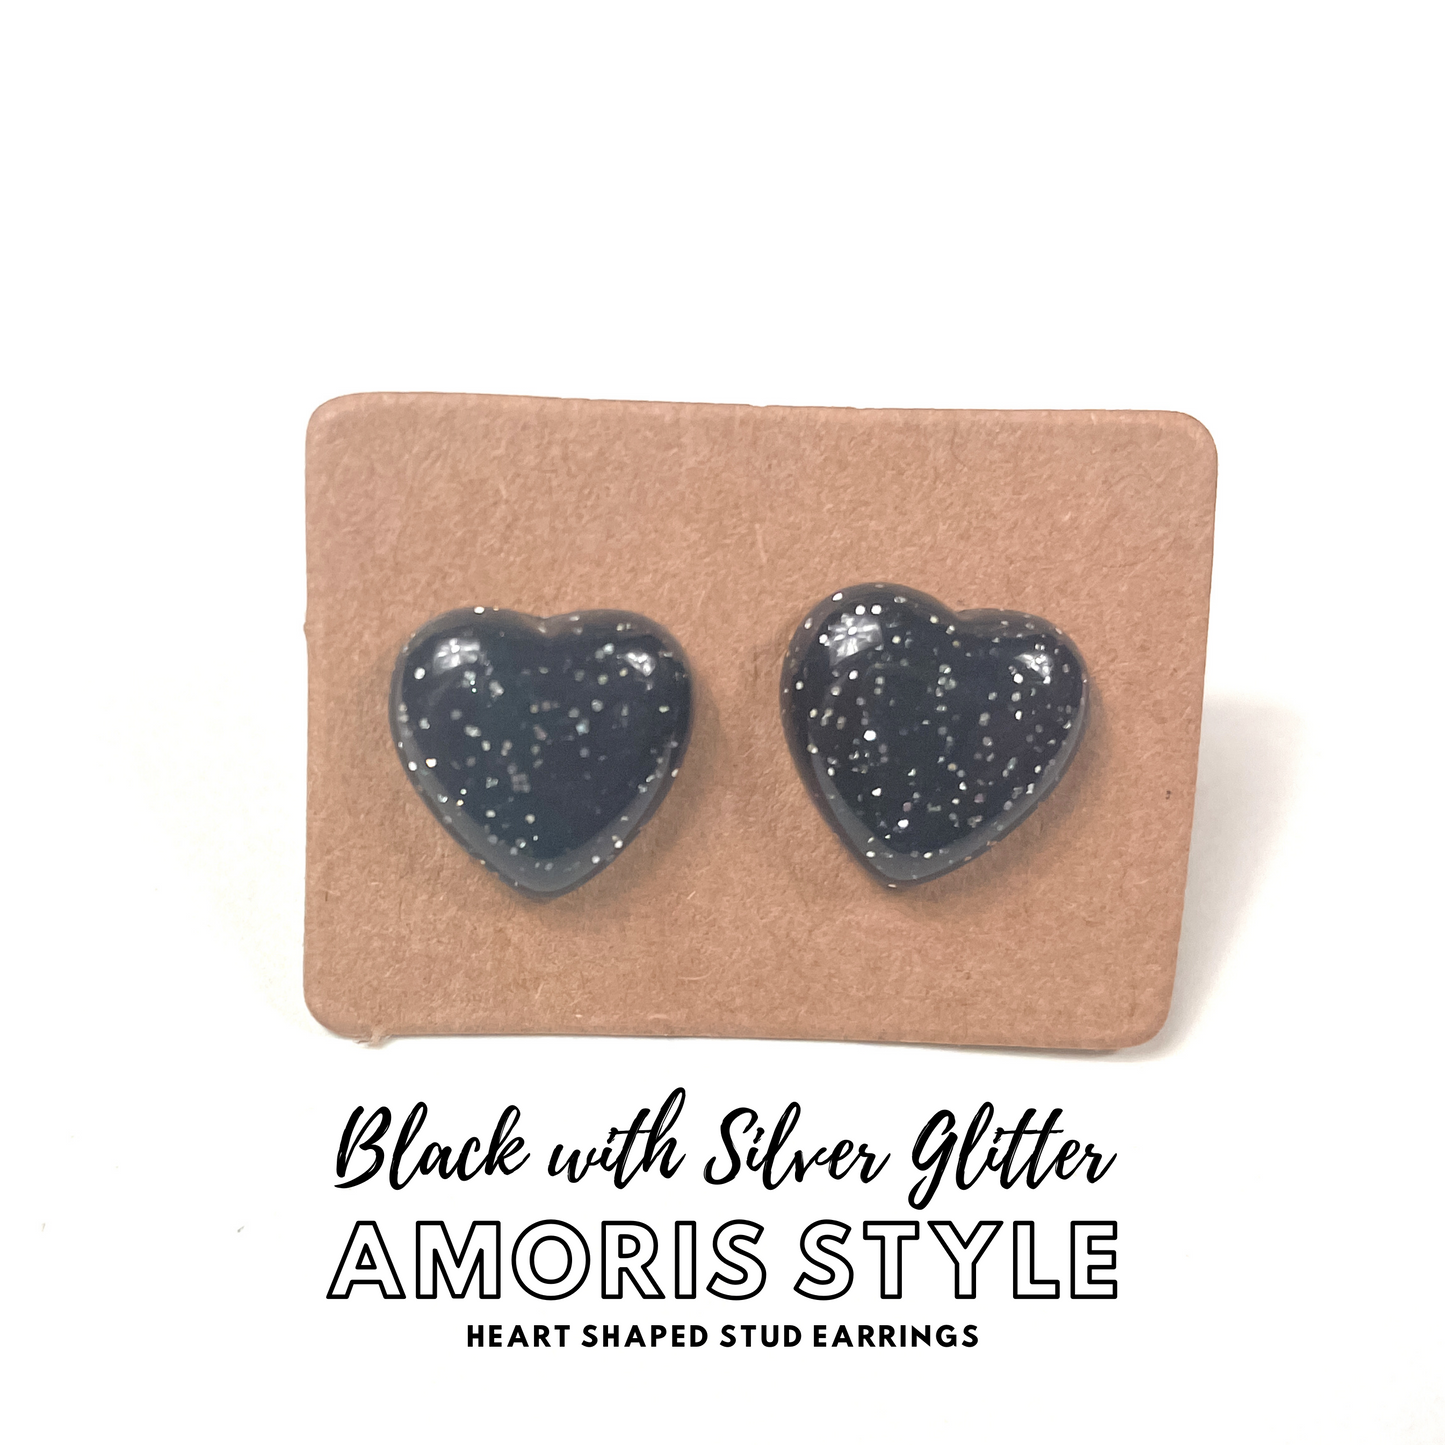 Black with Silver Glitter Amoris Style Earrings | Heart Shaped Stud Earrings